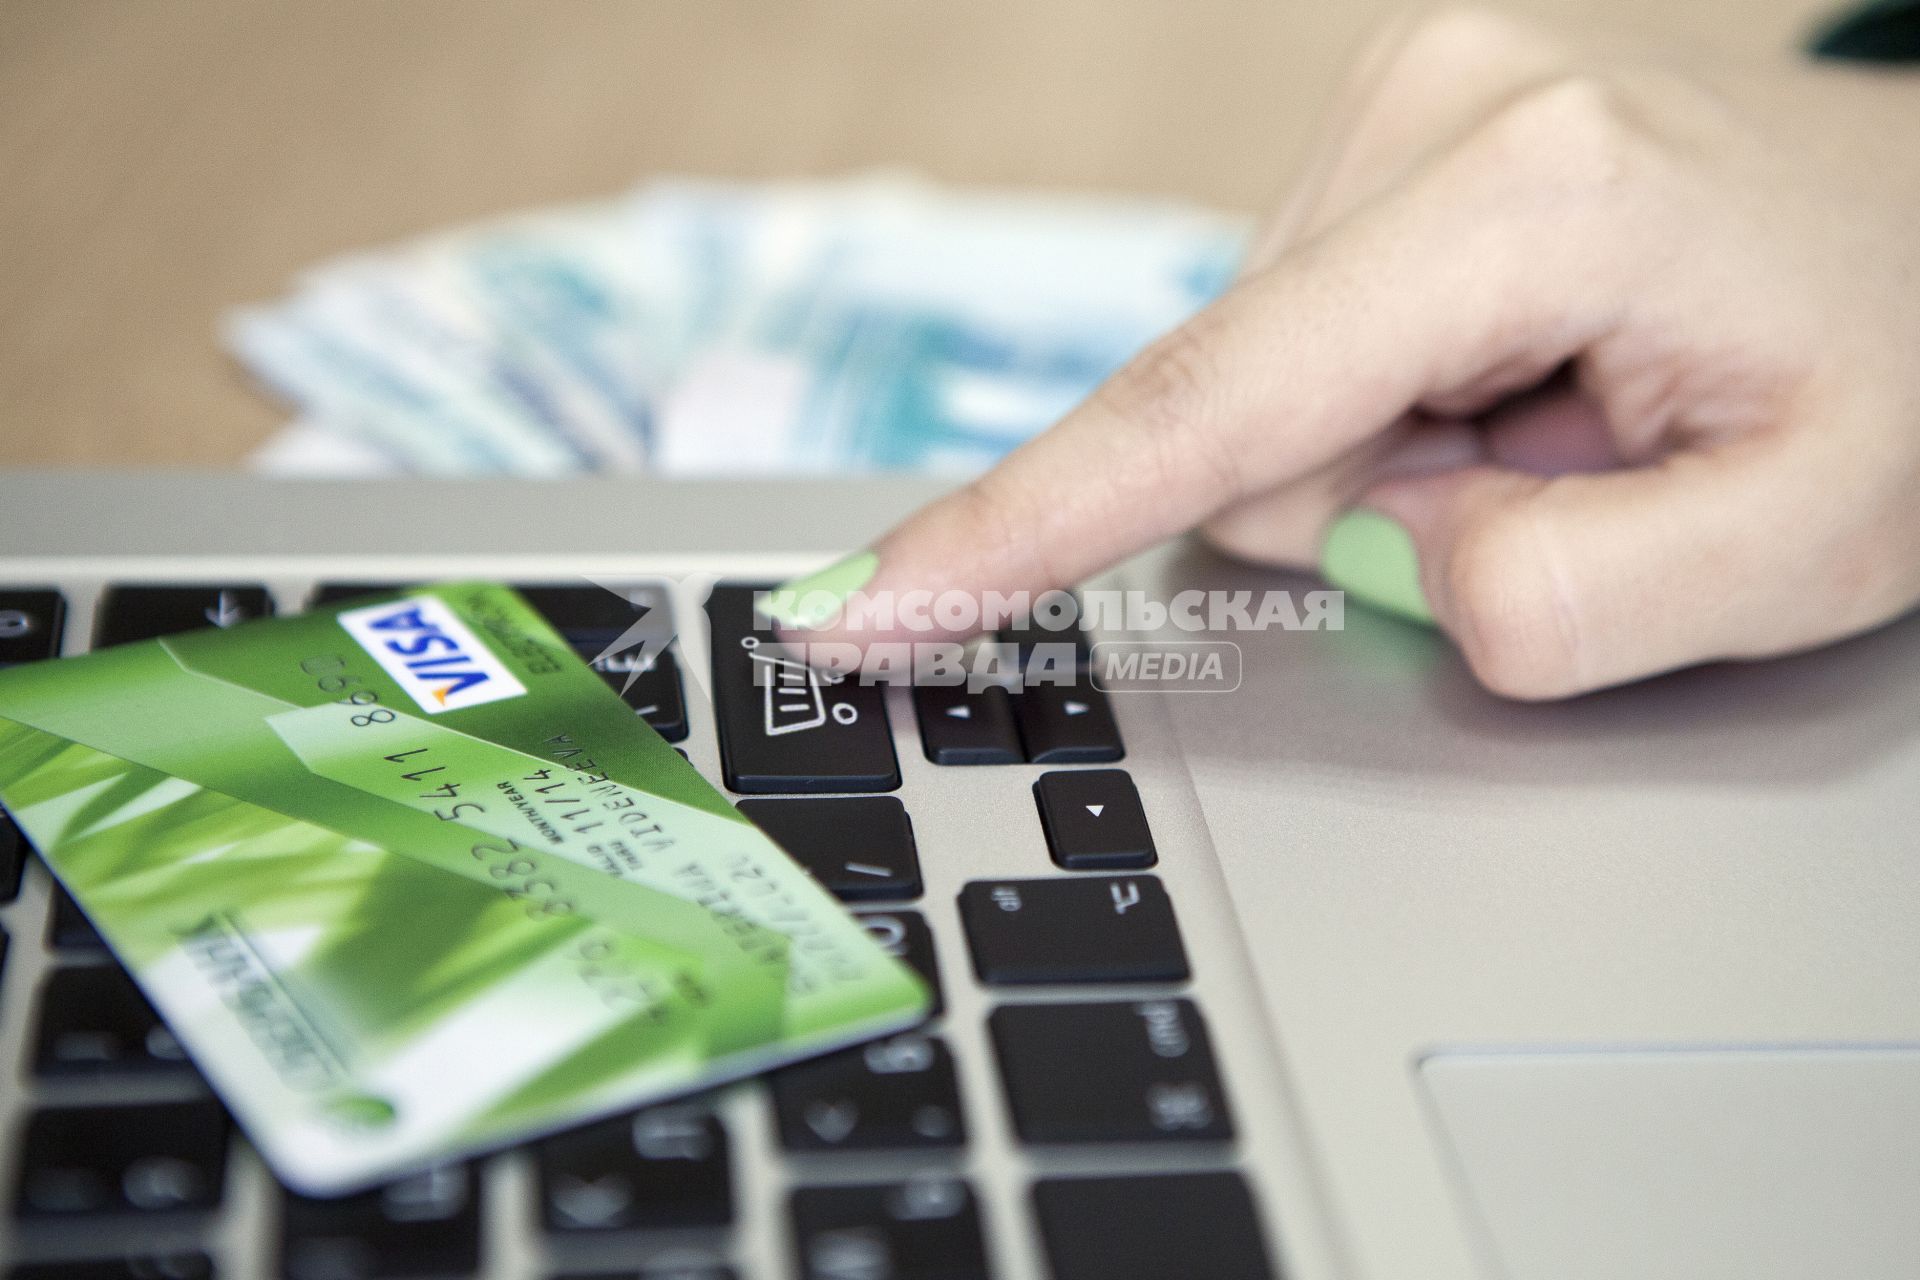 Человек совершает покупку через интернет используя кредитную карту